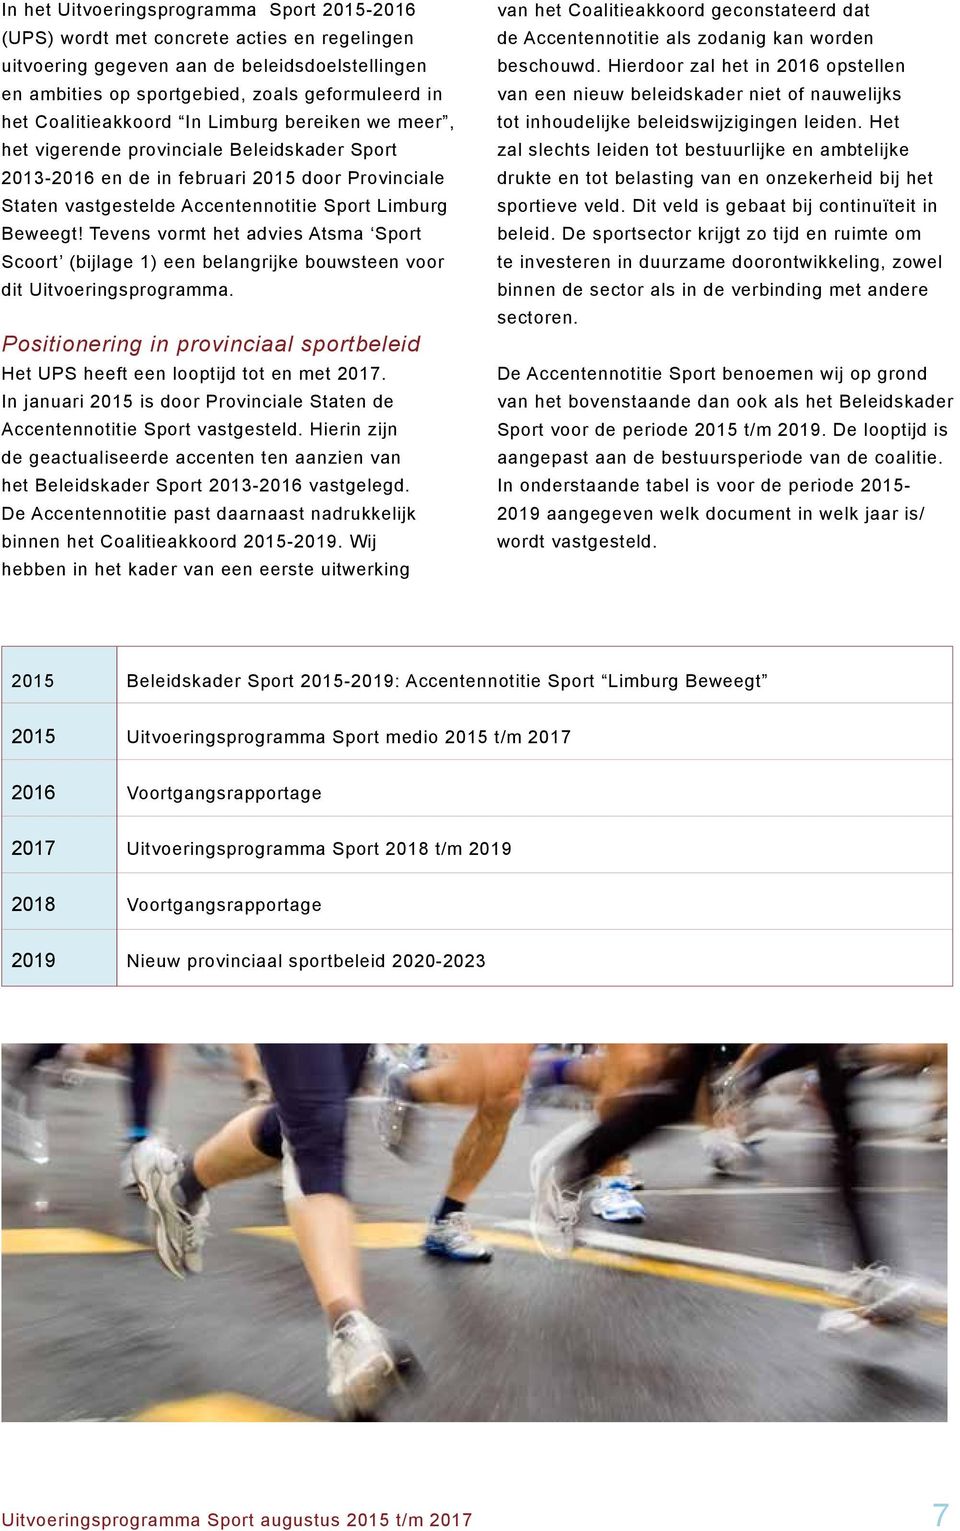 Tevens vormt het advies Atsma Sport Scoort (bijlage 1) een belangrijke bouwsteen voor dit Uitvoeringsprogramma. Positionering in provinciaal sportbeleid Het UPS heeft een looptijd tot en met 2017.